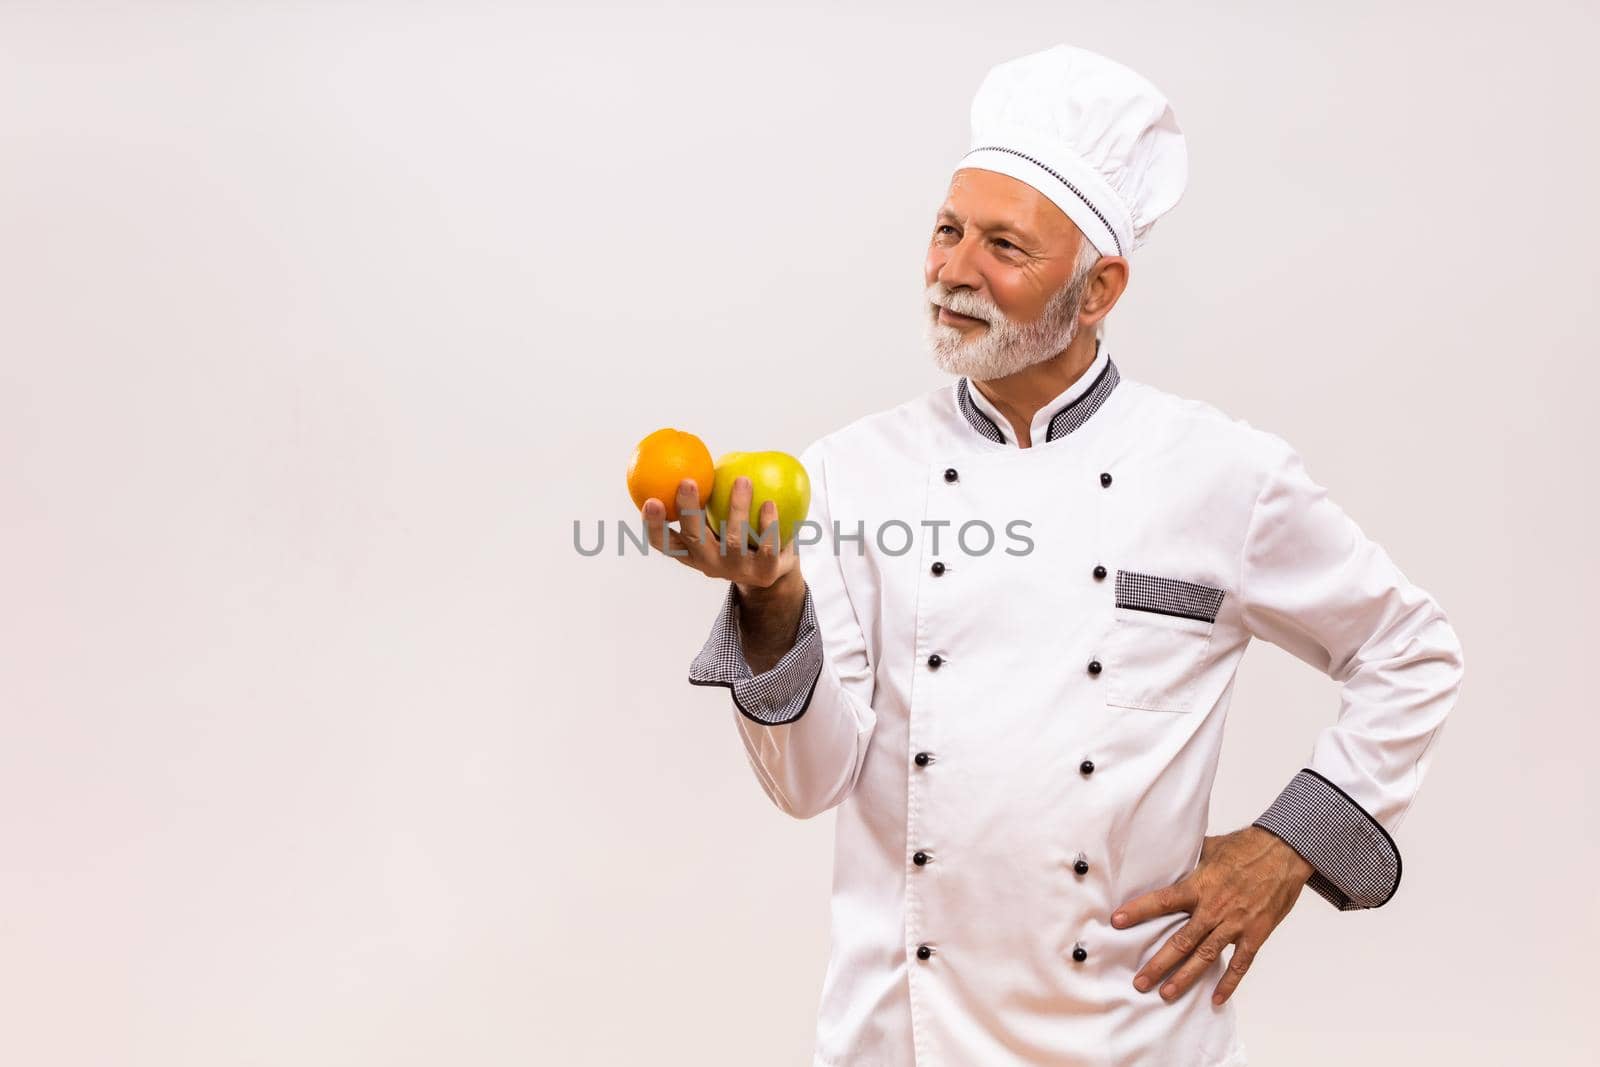 Image of senior chef holding  fruit and thinking on gray background.